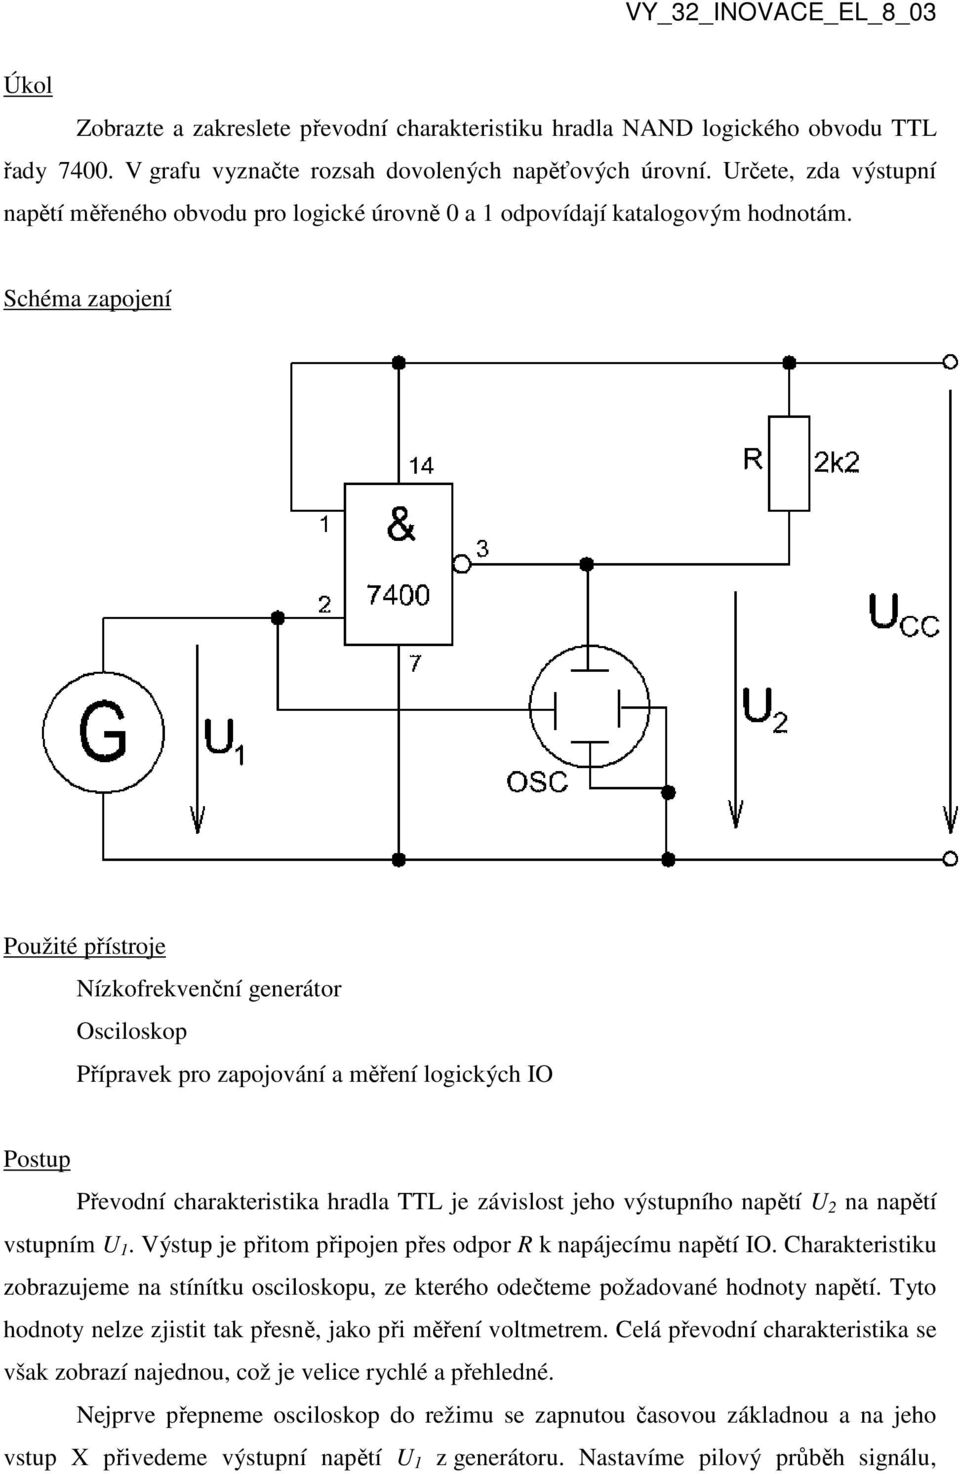 Schéma zapojení Použité přístroje Nízkofrekvenční generátor Osciloskop Přípravek pro zapojování a měření logických IO Postup Převodní charakteristika hradla TTL je závislost jeho výstupního napětí U